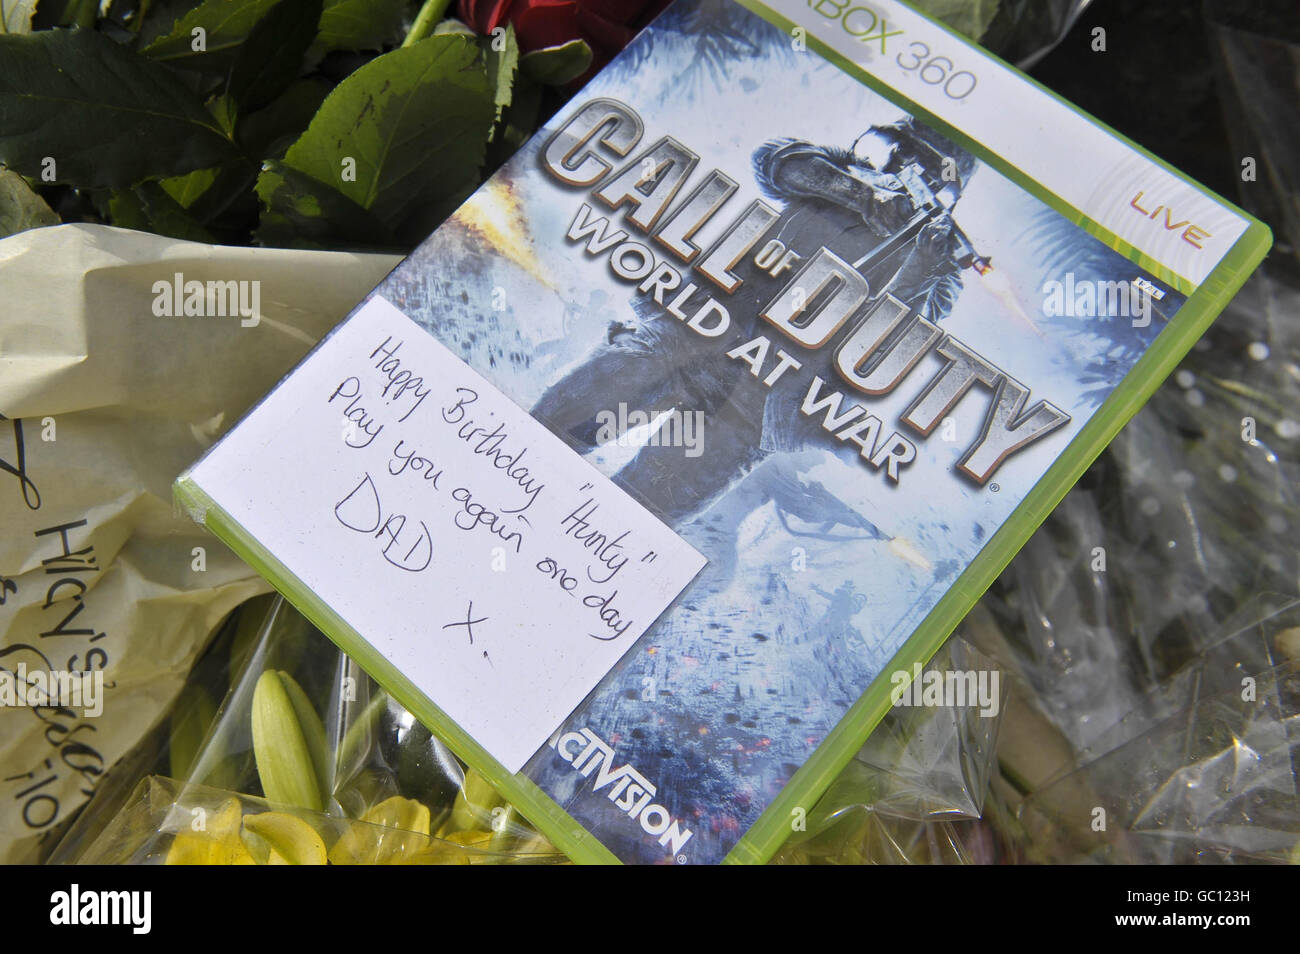 Une copie du jeu X-Box « Call of Duty World at War » laissé par Phillip Hunt, le père de Richard Hunt, le 200e soldat à mourir en Afghanistan à la base du cenotaphe à un mémorial pour célébrer la vie de Richard dans sa ville natale d'Abergavenny. Banque D'Images